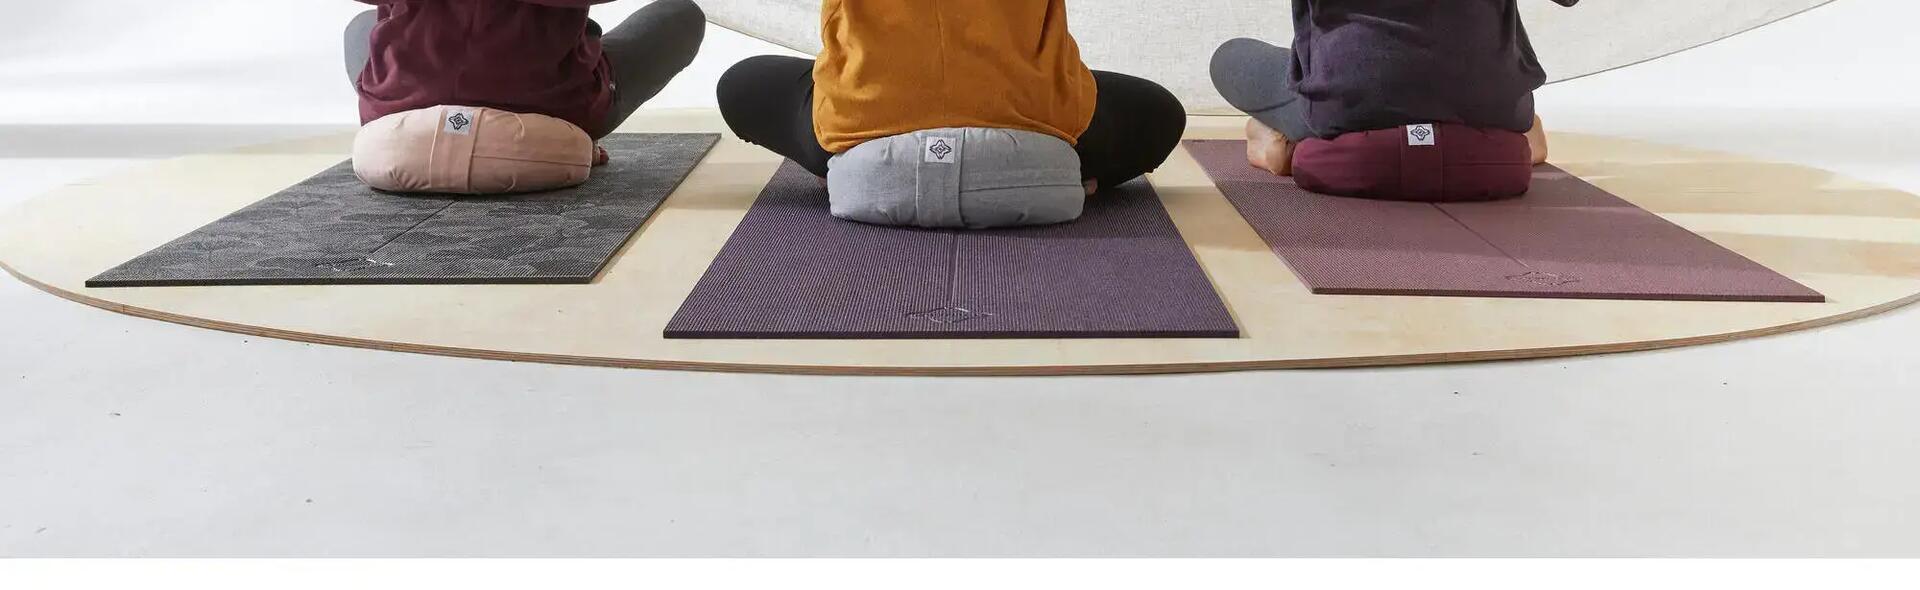 banniere_comment_choisir_accessoires_yoga